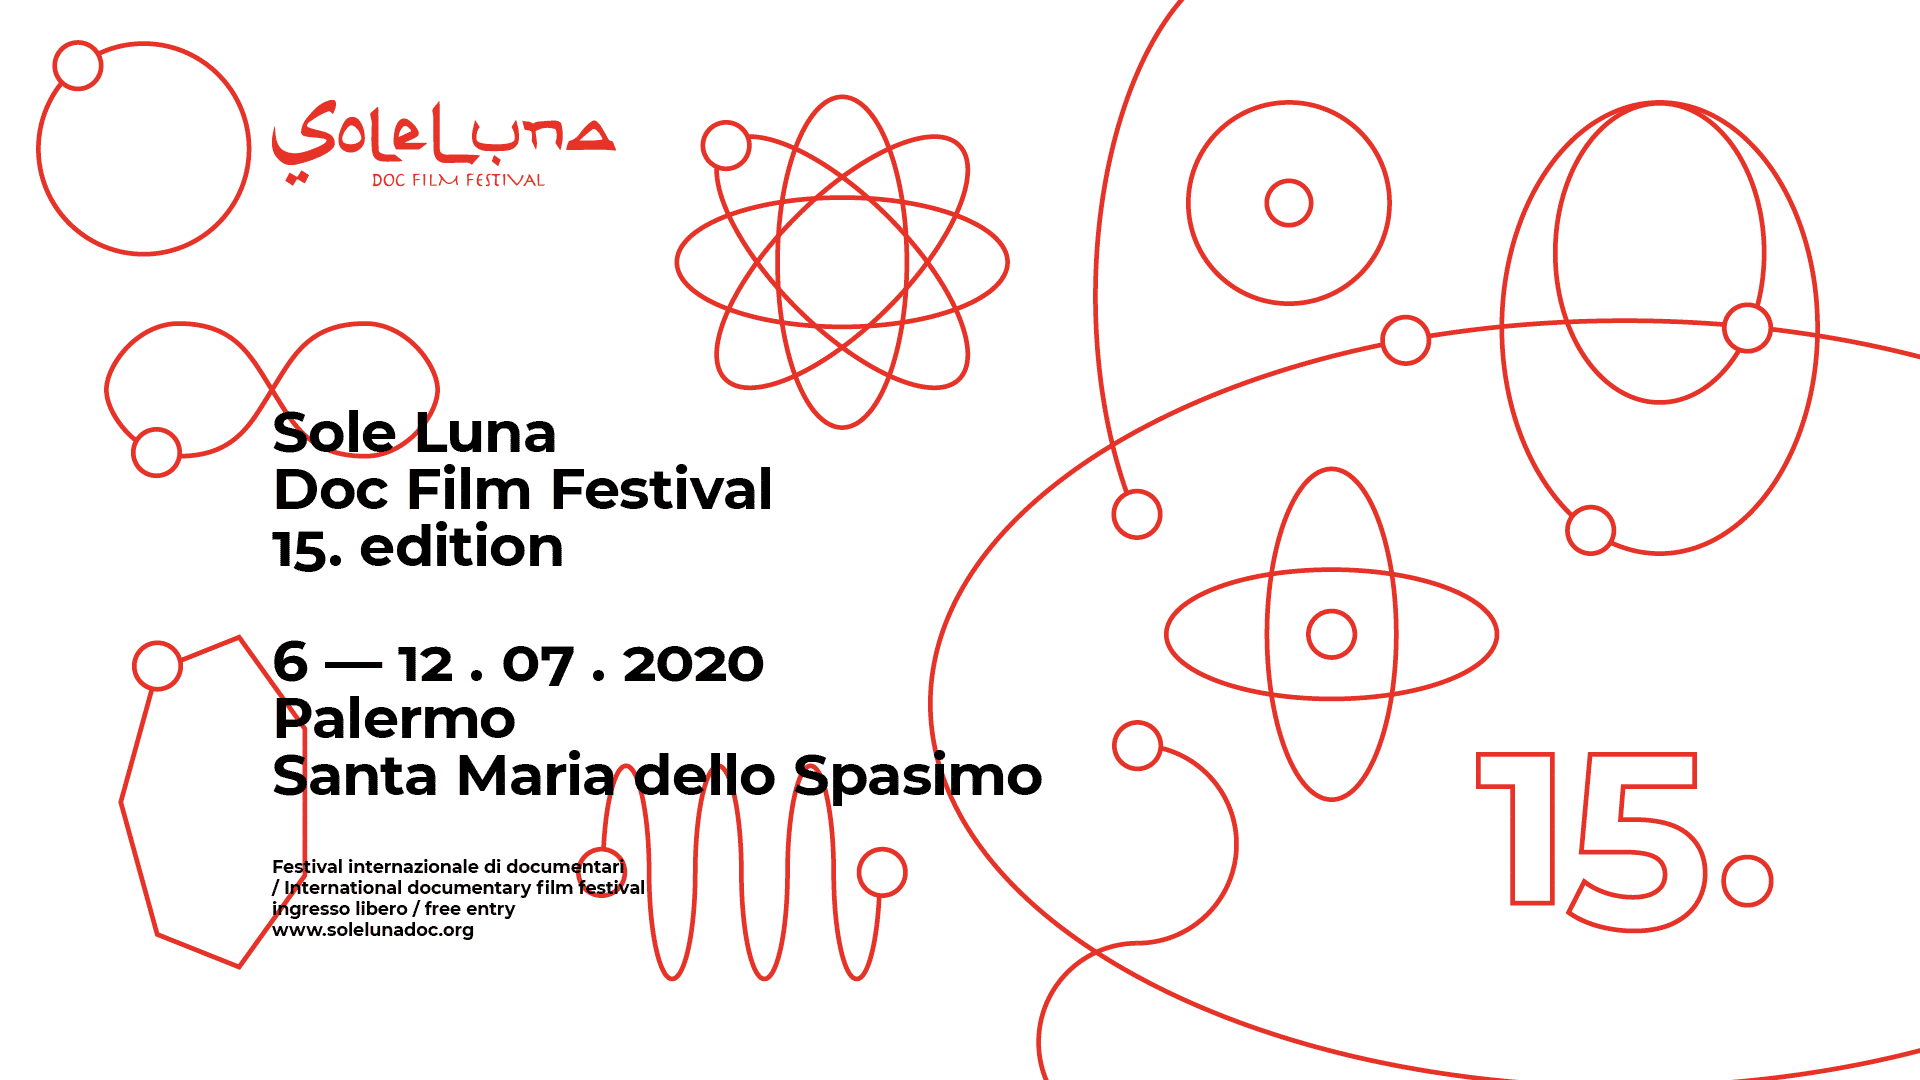 Sole Luna Doc Film Festival 2020: il programma di mercoledì 8 luglio